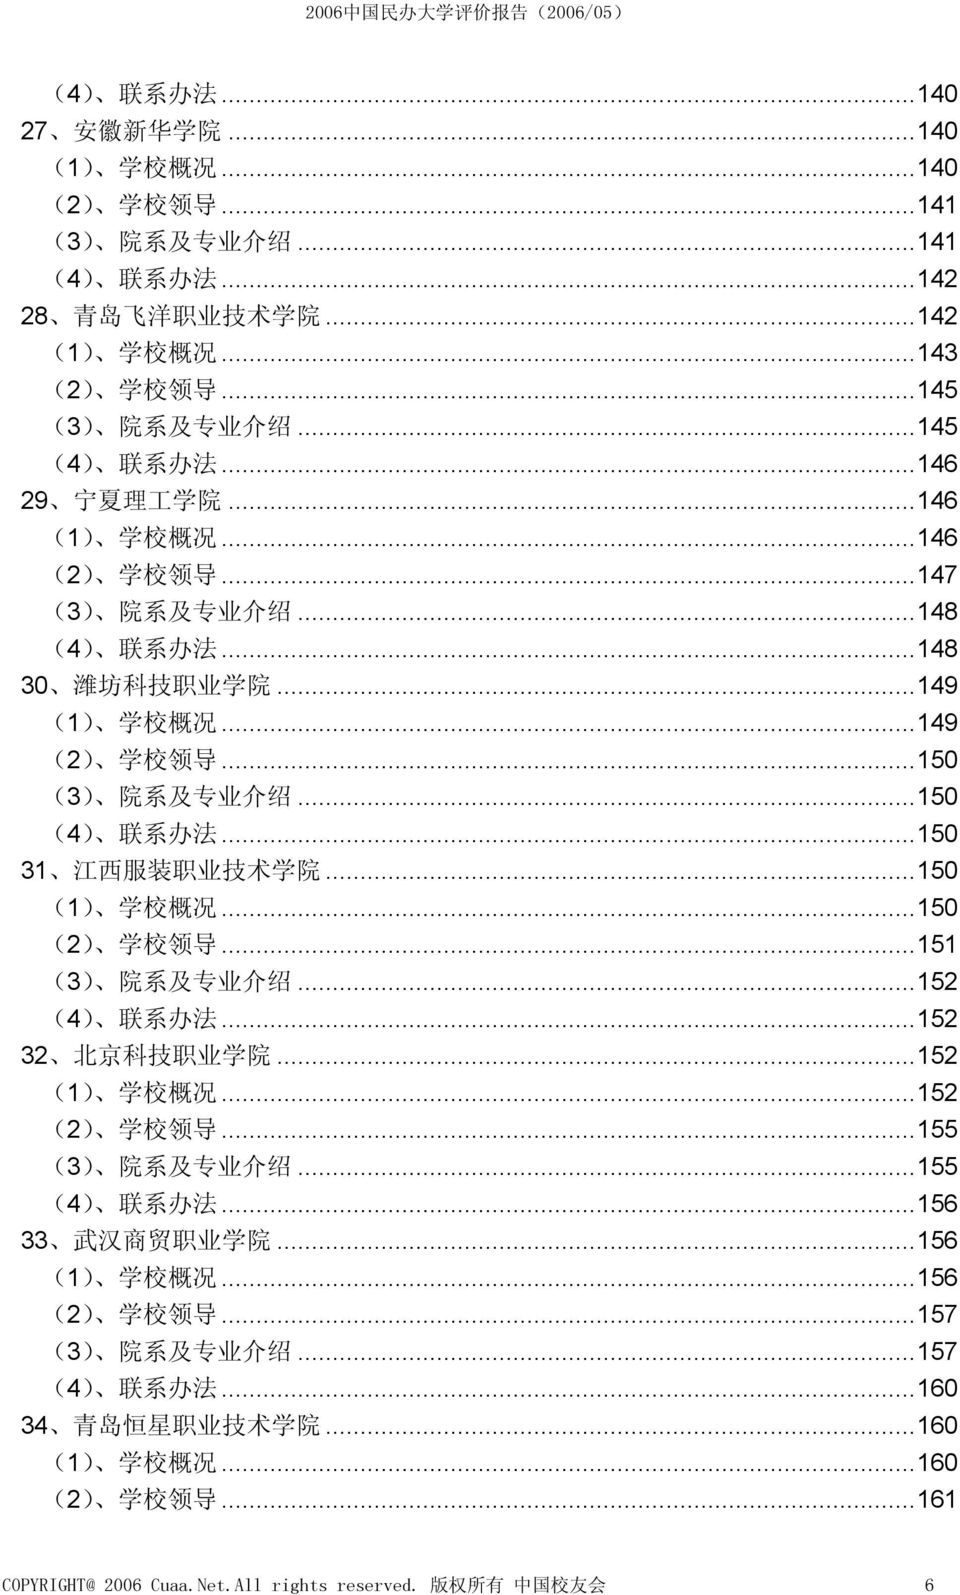 ..150 (4) 联 系 办 法...150 31 江 西 服 装 职 业 技 术 学 院...150 (1) 学 校 概 况...150 (2) 学 校 领 导...151 (3) 院 系 及 专 业 介 绍...152 (4) 联 系 办 法...152 32 北 京 科 技 职 业 学 院...152 (1) 学 校 概 况...152 (2) 学 校 领 导.